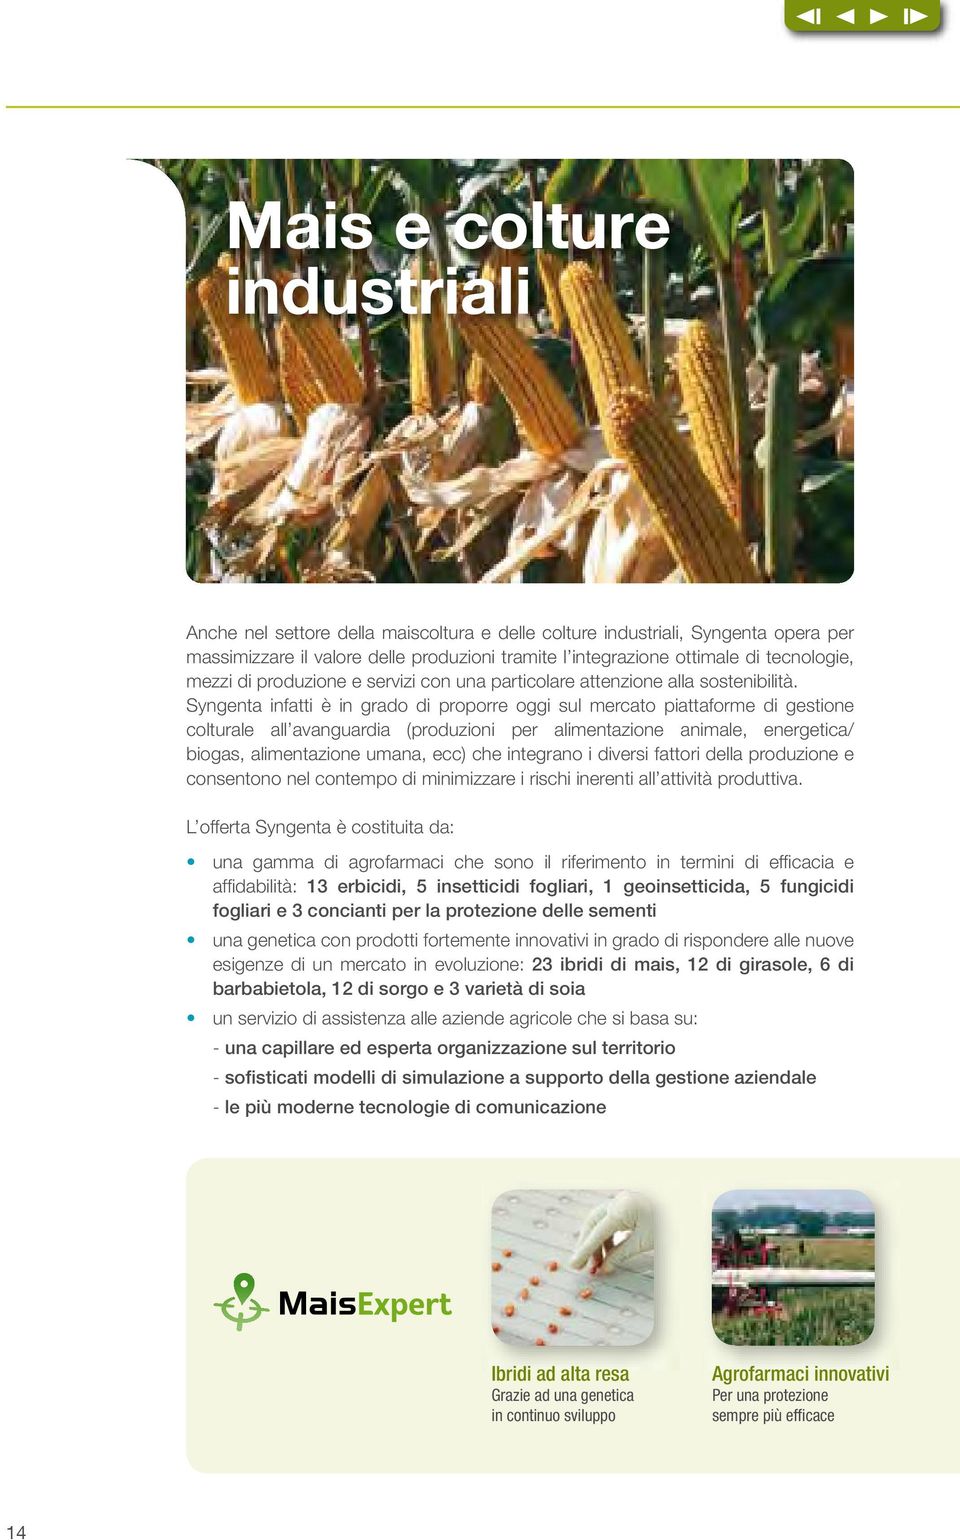 Syngenta infatti è in grado di proporre oggi sul mercato piattaforme di gestione colturale all avanguardia (produzioni per alimentazione animale, energetica/ biogas, alimentazione umana, ecc) che